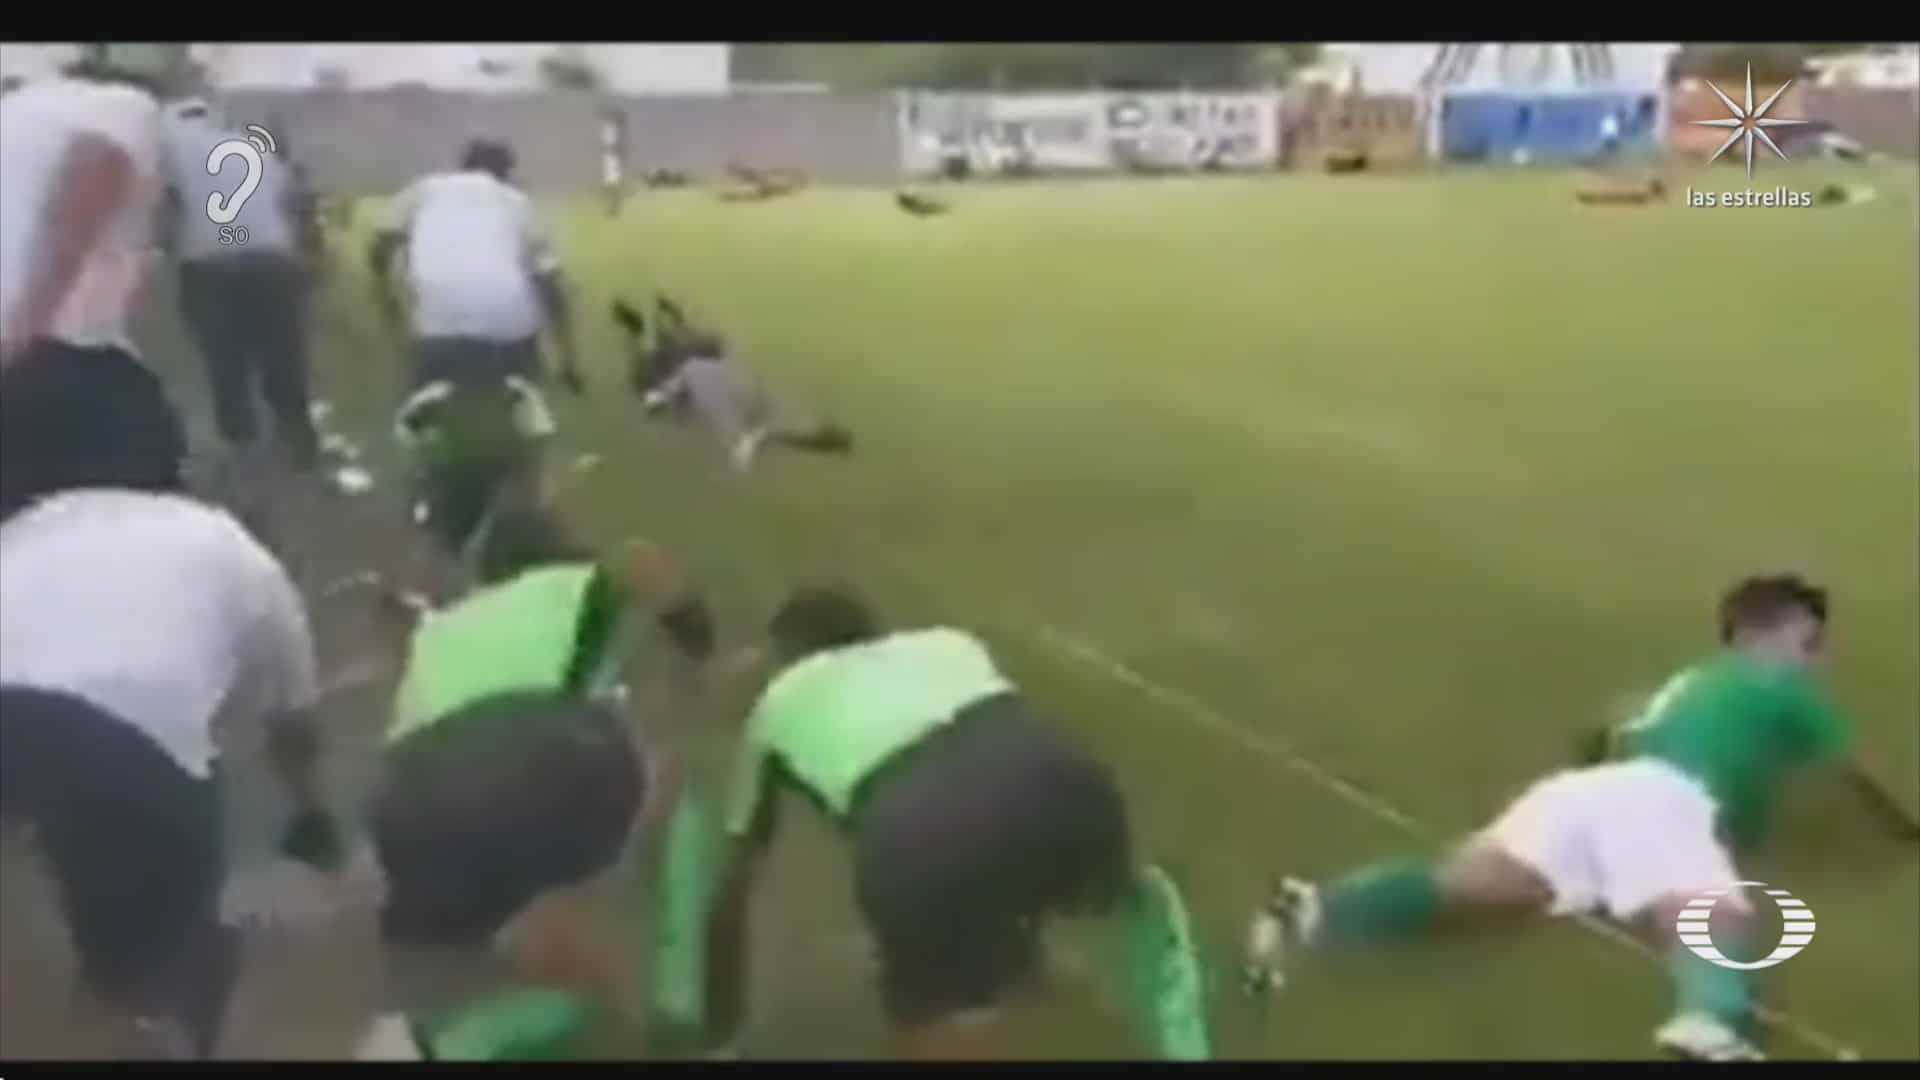 hombres armados irrumpen cerca de torneo de futbol en leon guanajuato